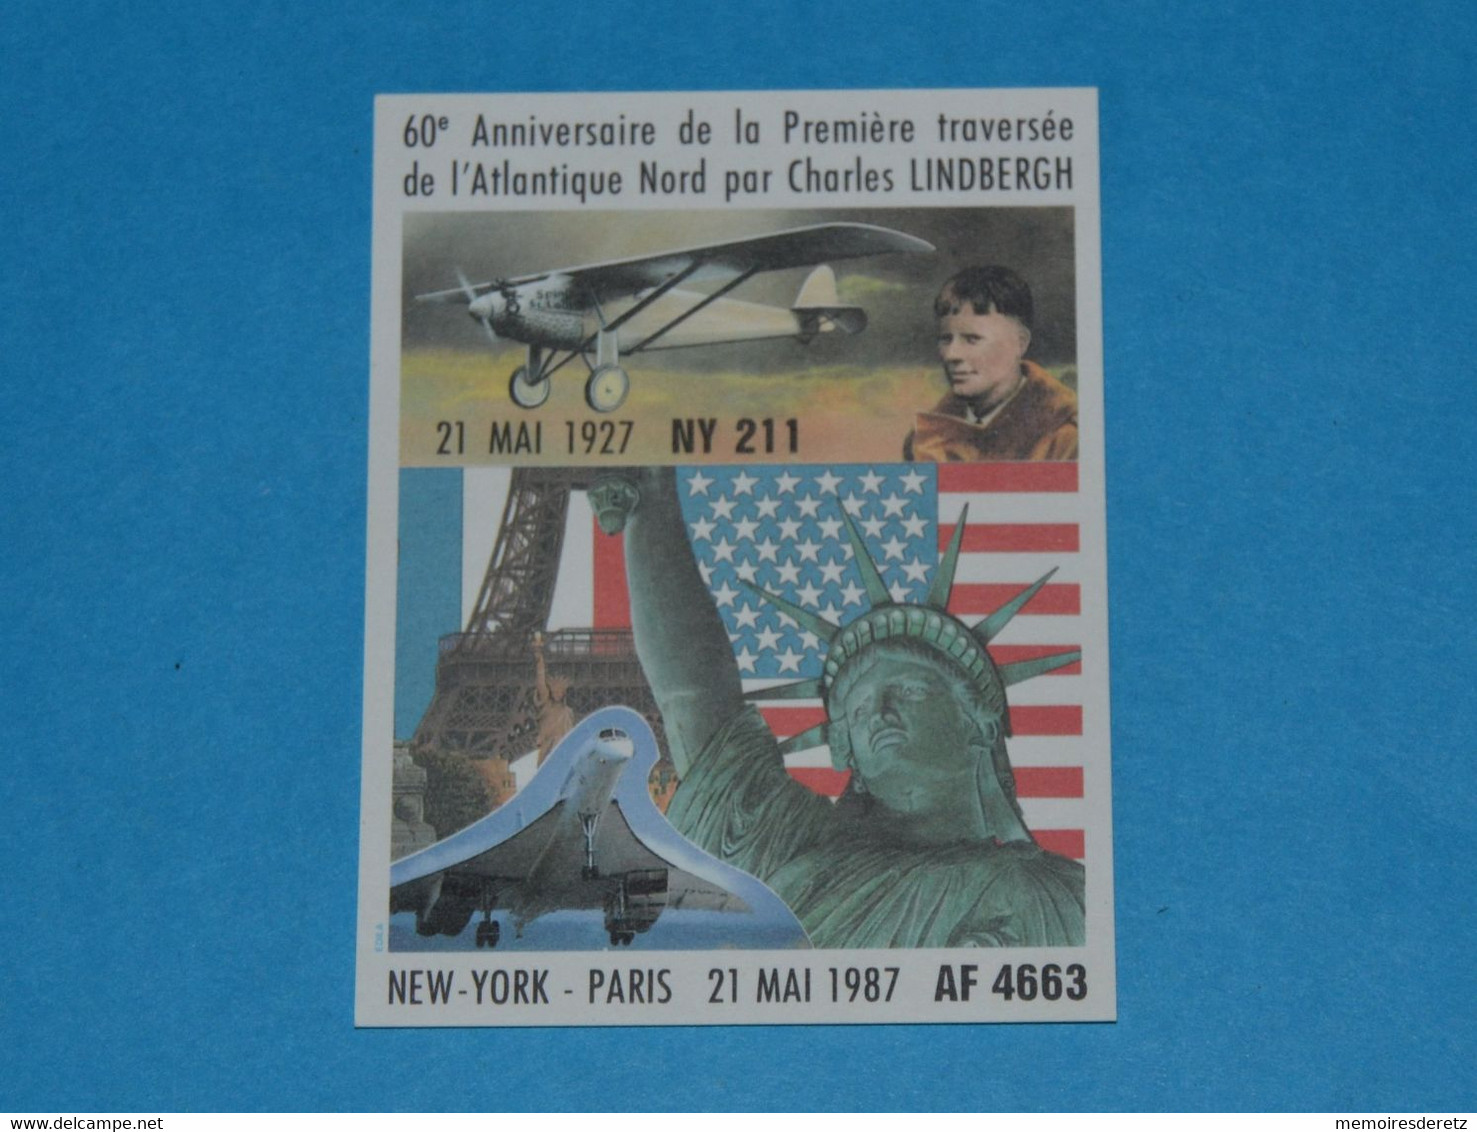 Avion CONCORDE - Autocollant Sticker -NEW-YORK PARIS 21 Mai 1987 60ème Anniversaire LINDBERGH Tour Eiffel Statue Liberté - Autocollants